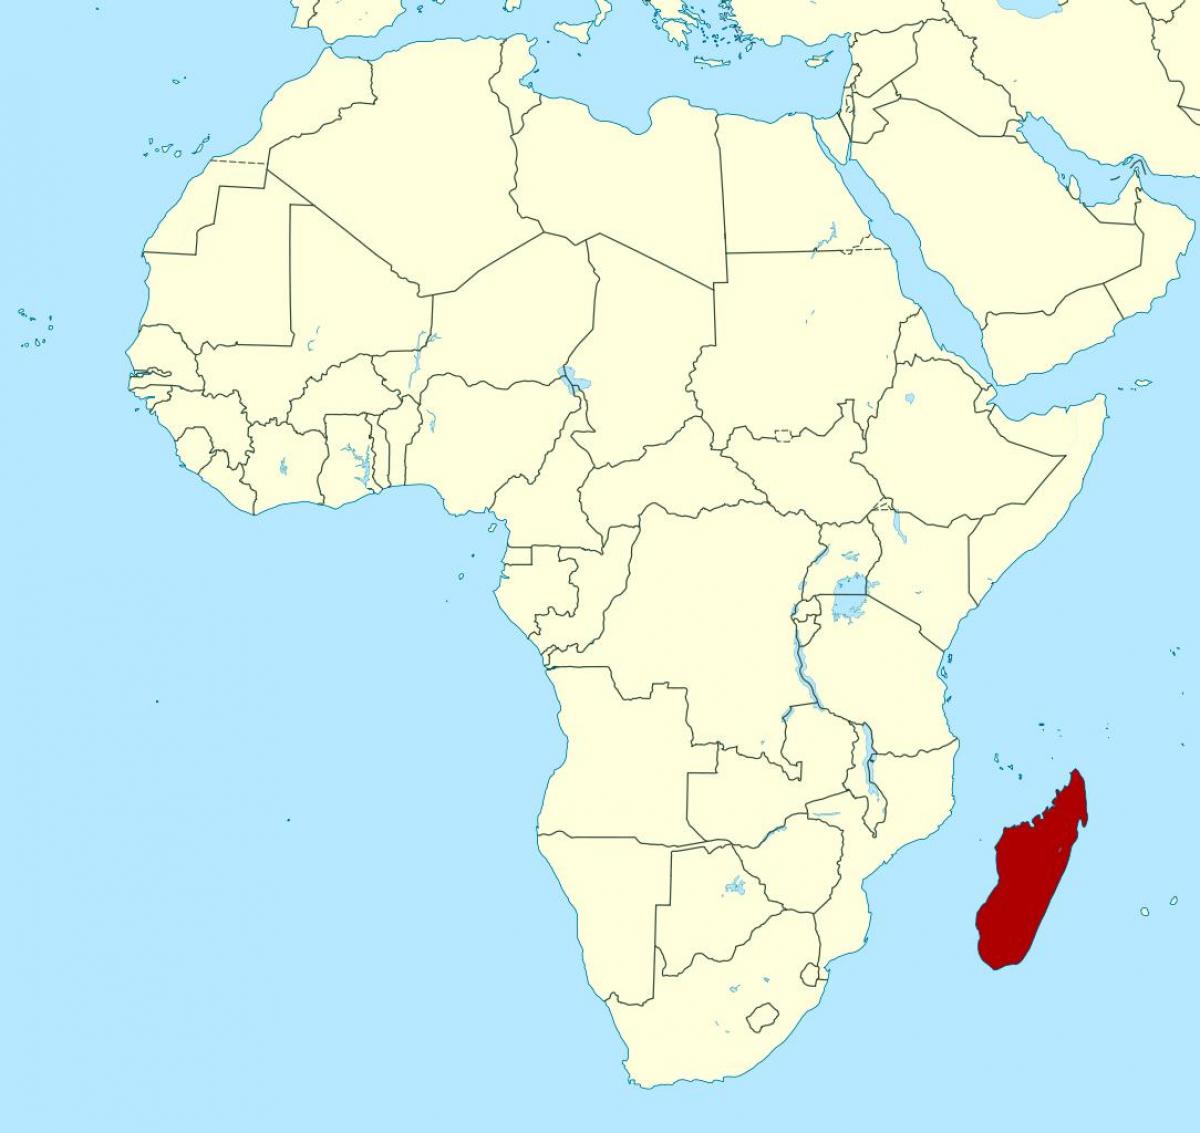 Madagaskar di afrika peta